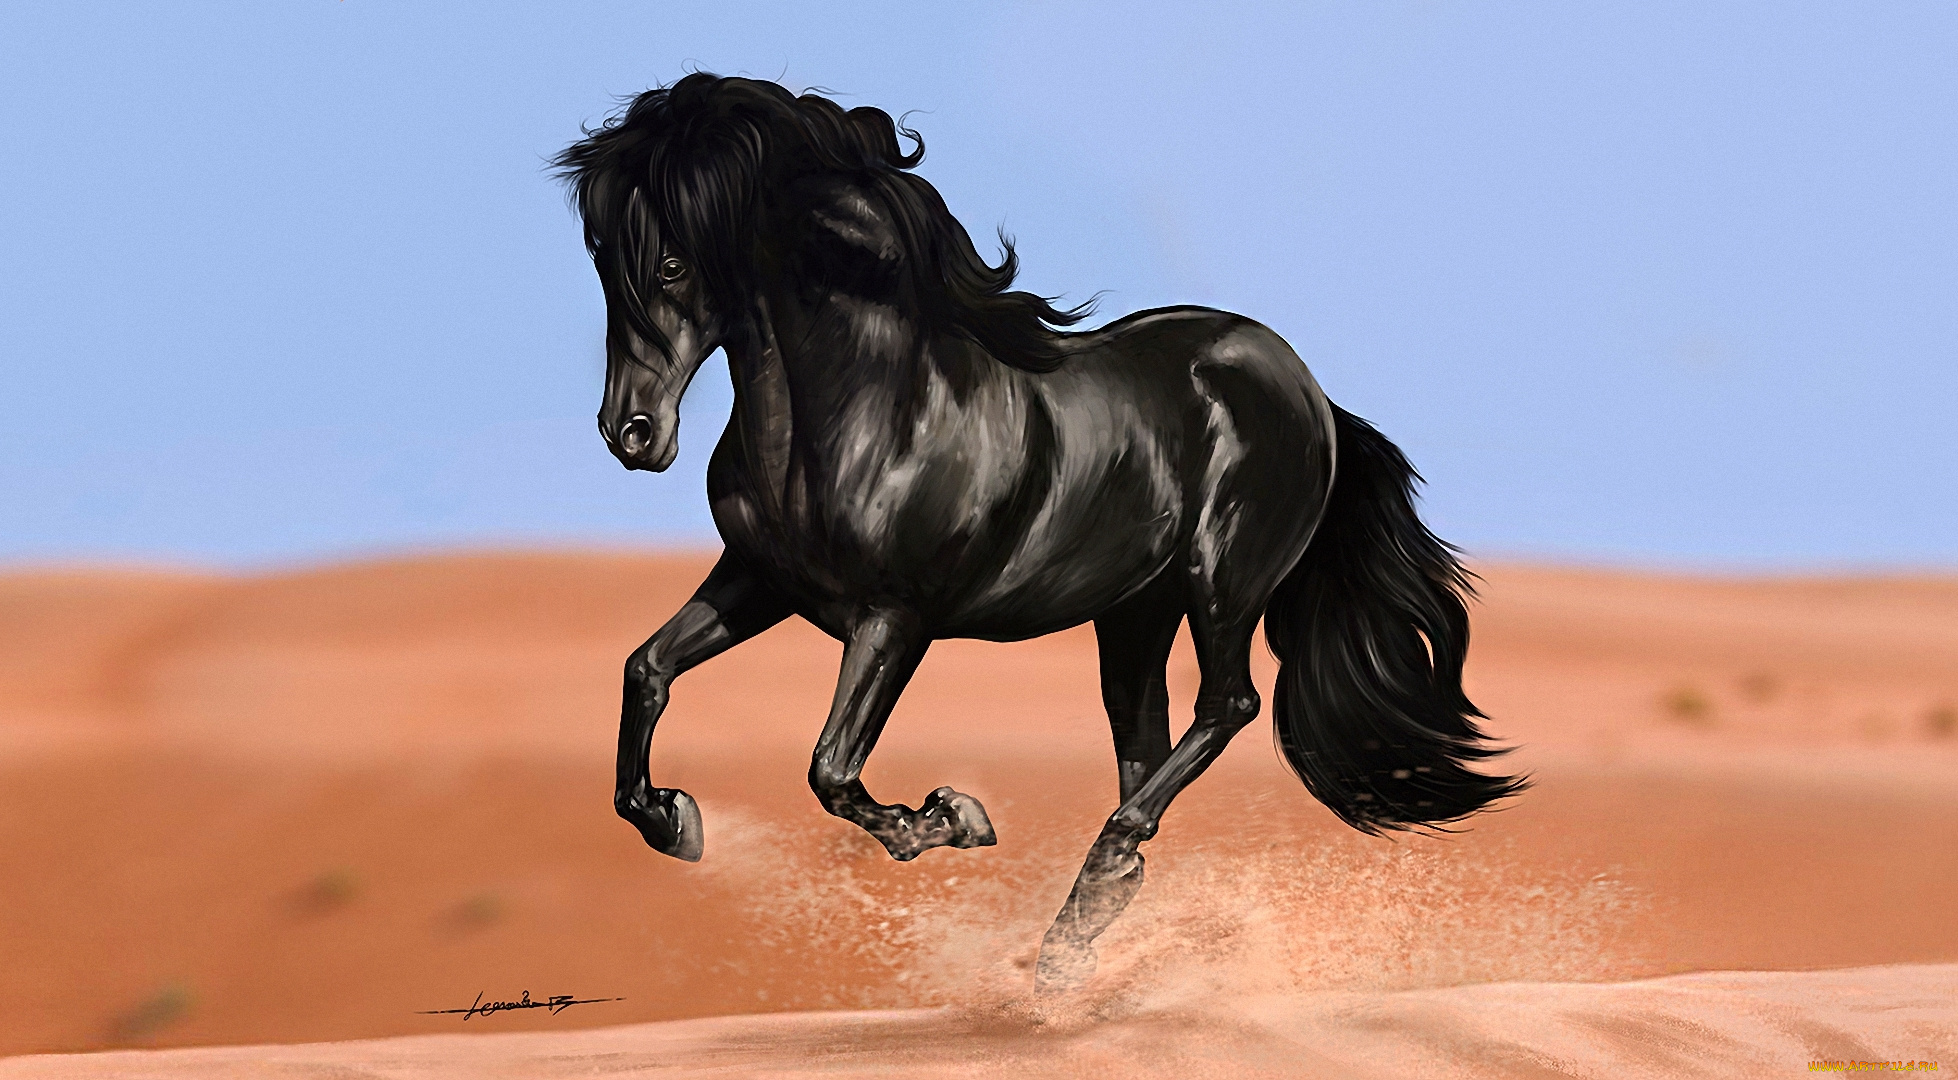 рисованные, животные, , лошади, дюны, песок, бег, конь, вороной, арт